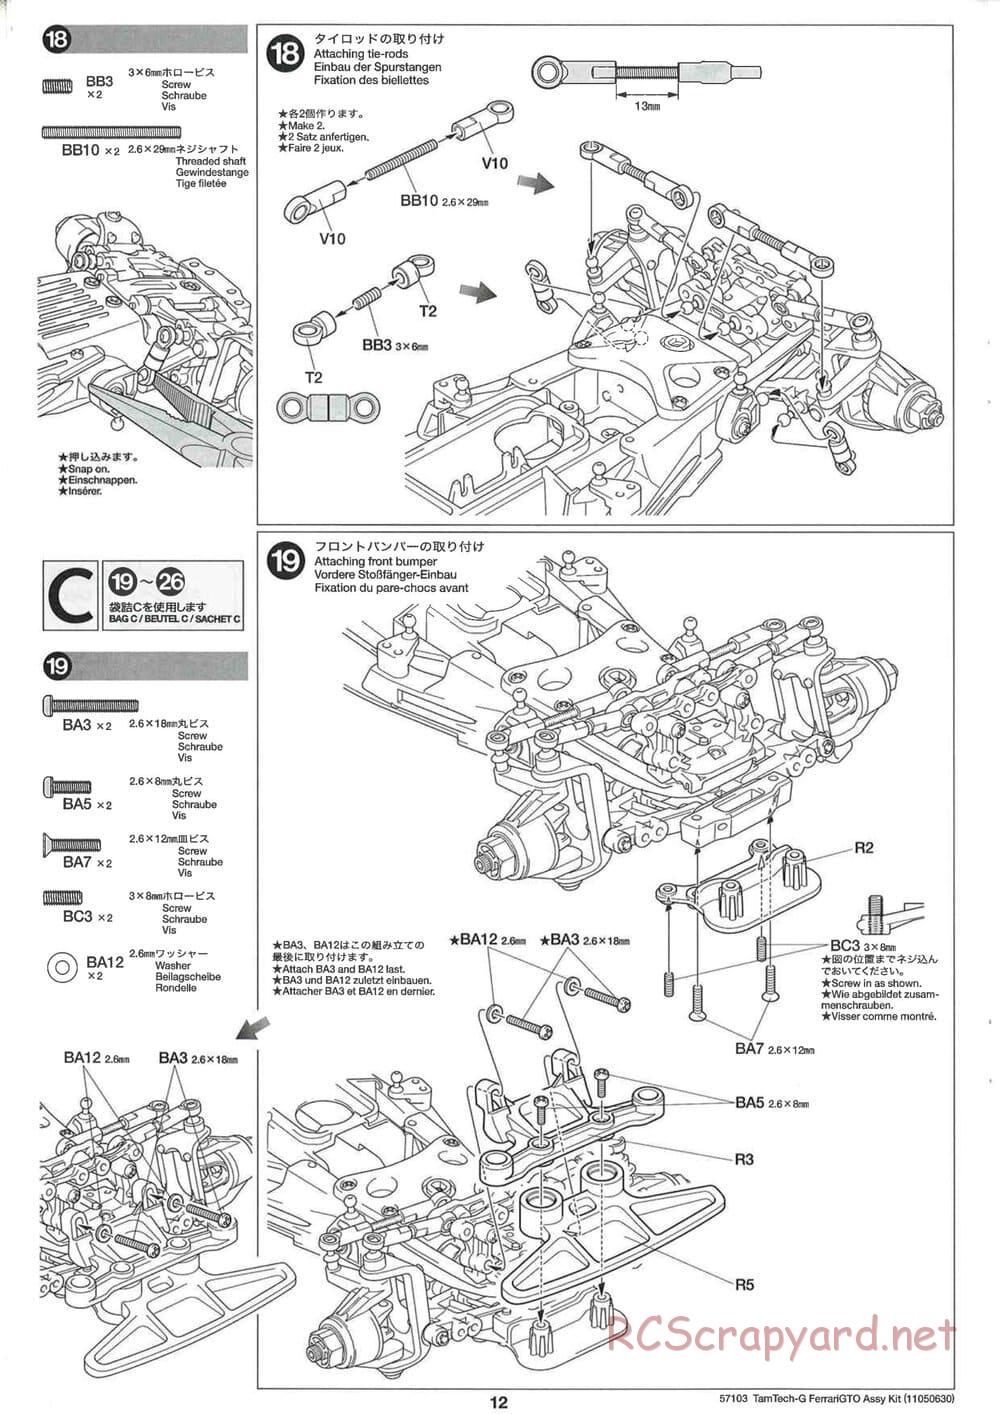 Tamiya - Ferrari 288 GTO - GT-01 Chassis - Manual - Page 12